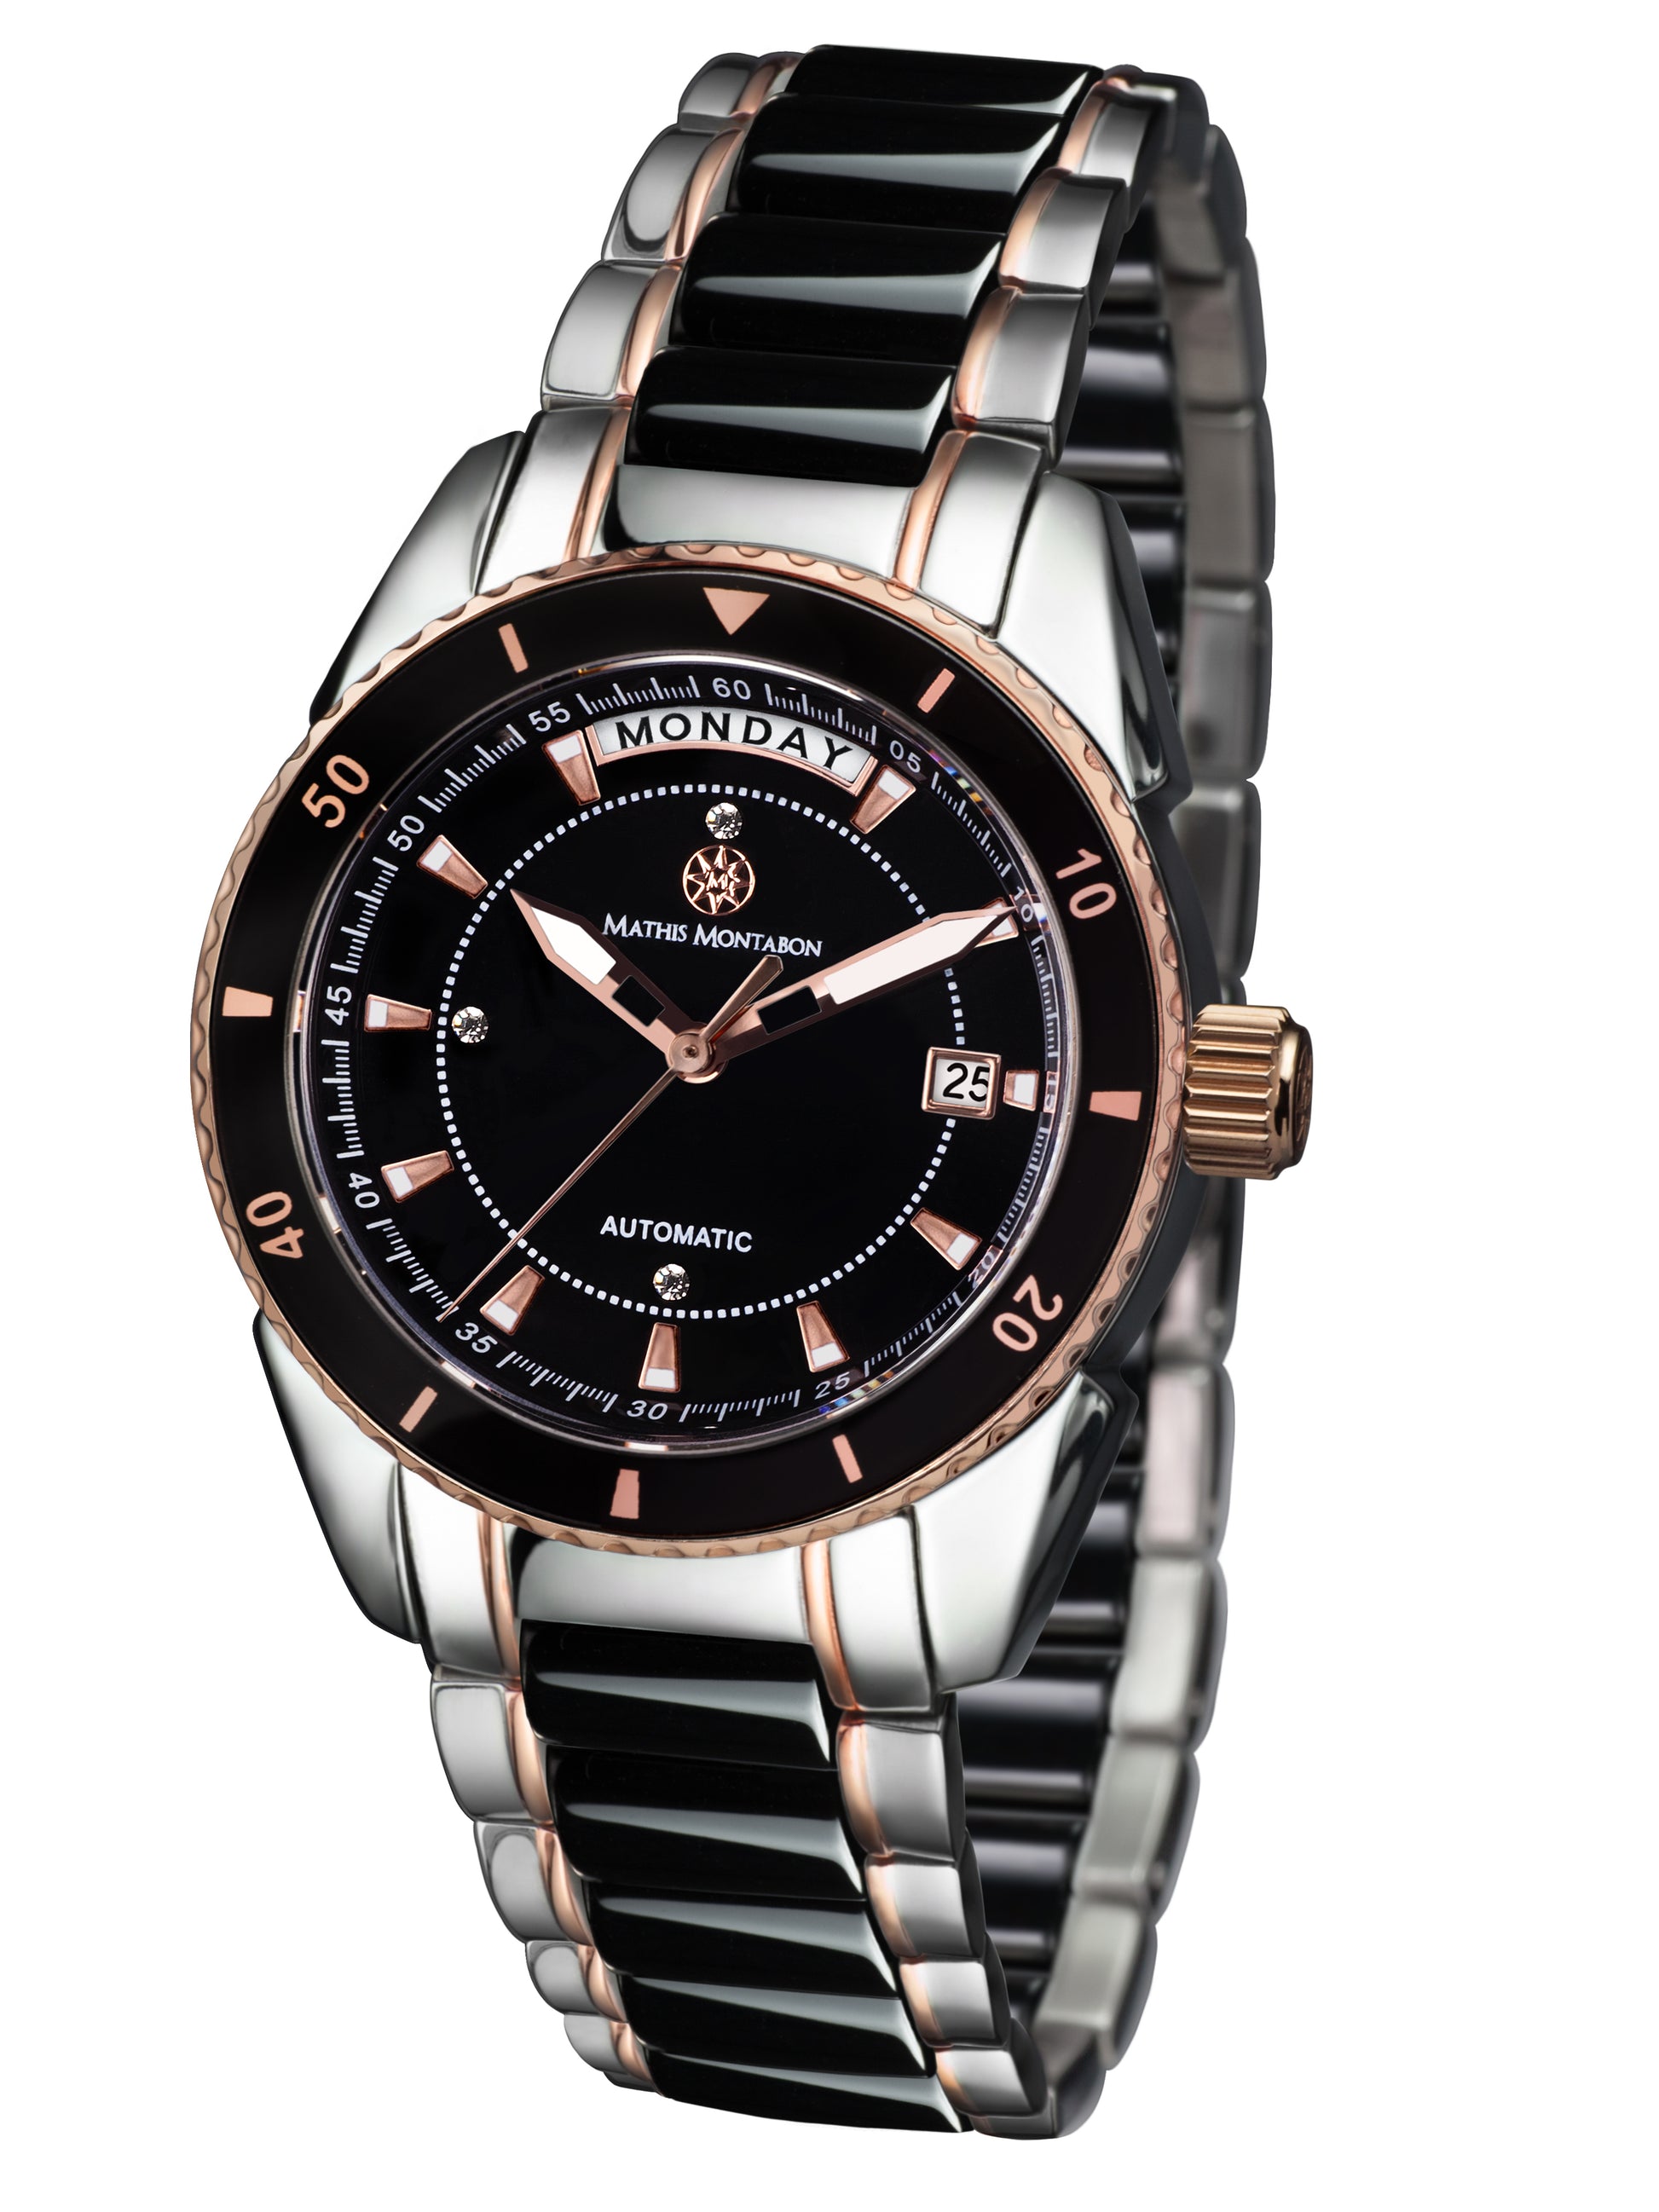 Automatic watches — La Magnifique — Mathis Montabon — rosegold schwarz II